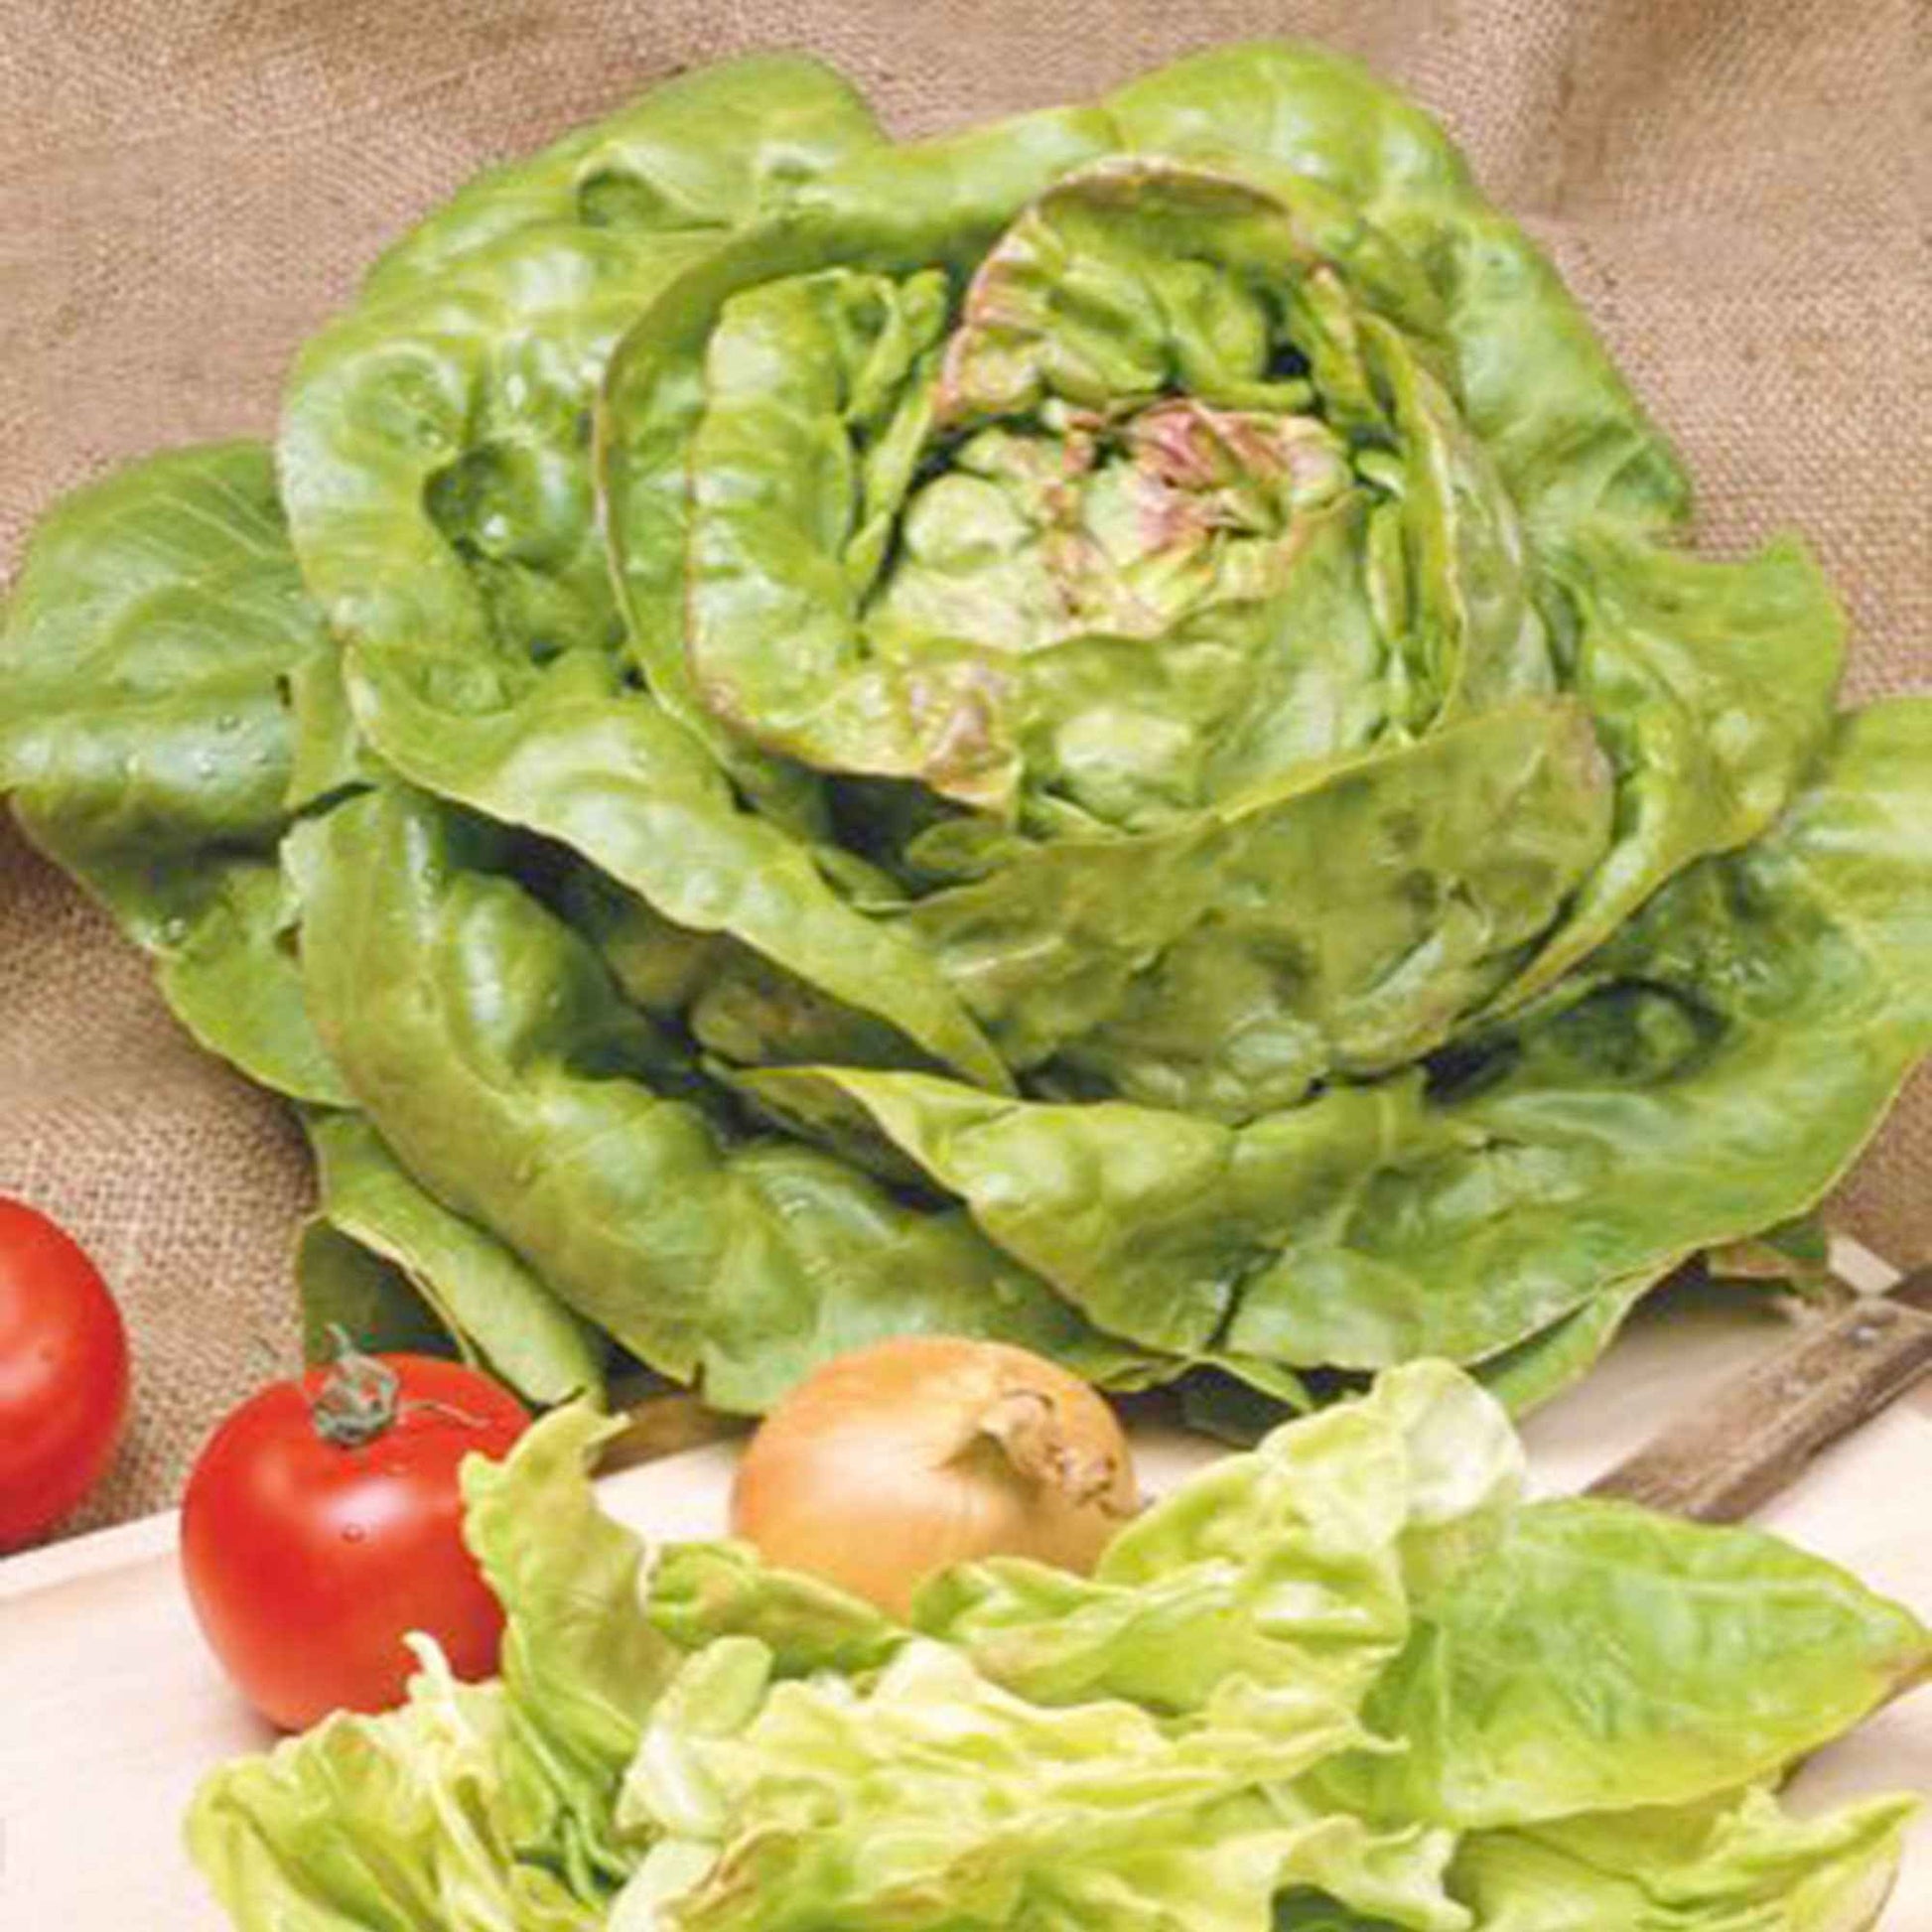 Laitue Lactuca 'Meikoningin' - Biologique 30 m² - Semences de légumes - Légumes